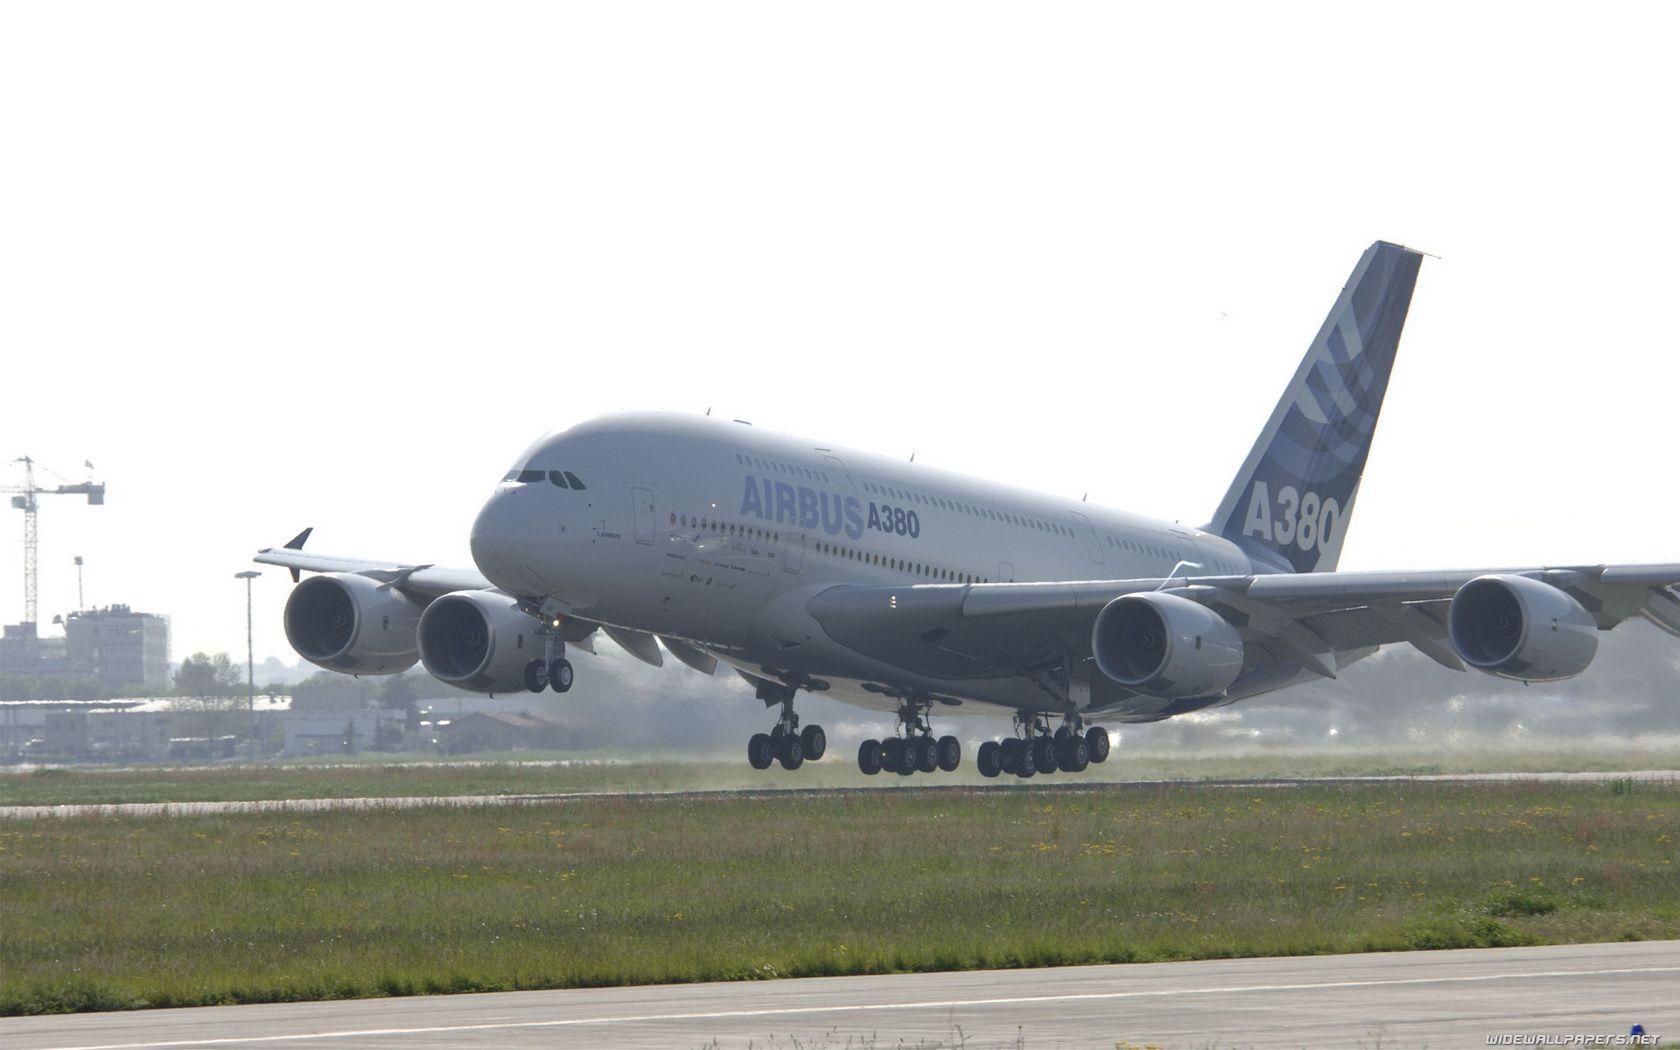 Airbus A380 Take Off HD Wallpaper for Desktop. sekhar